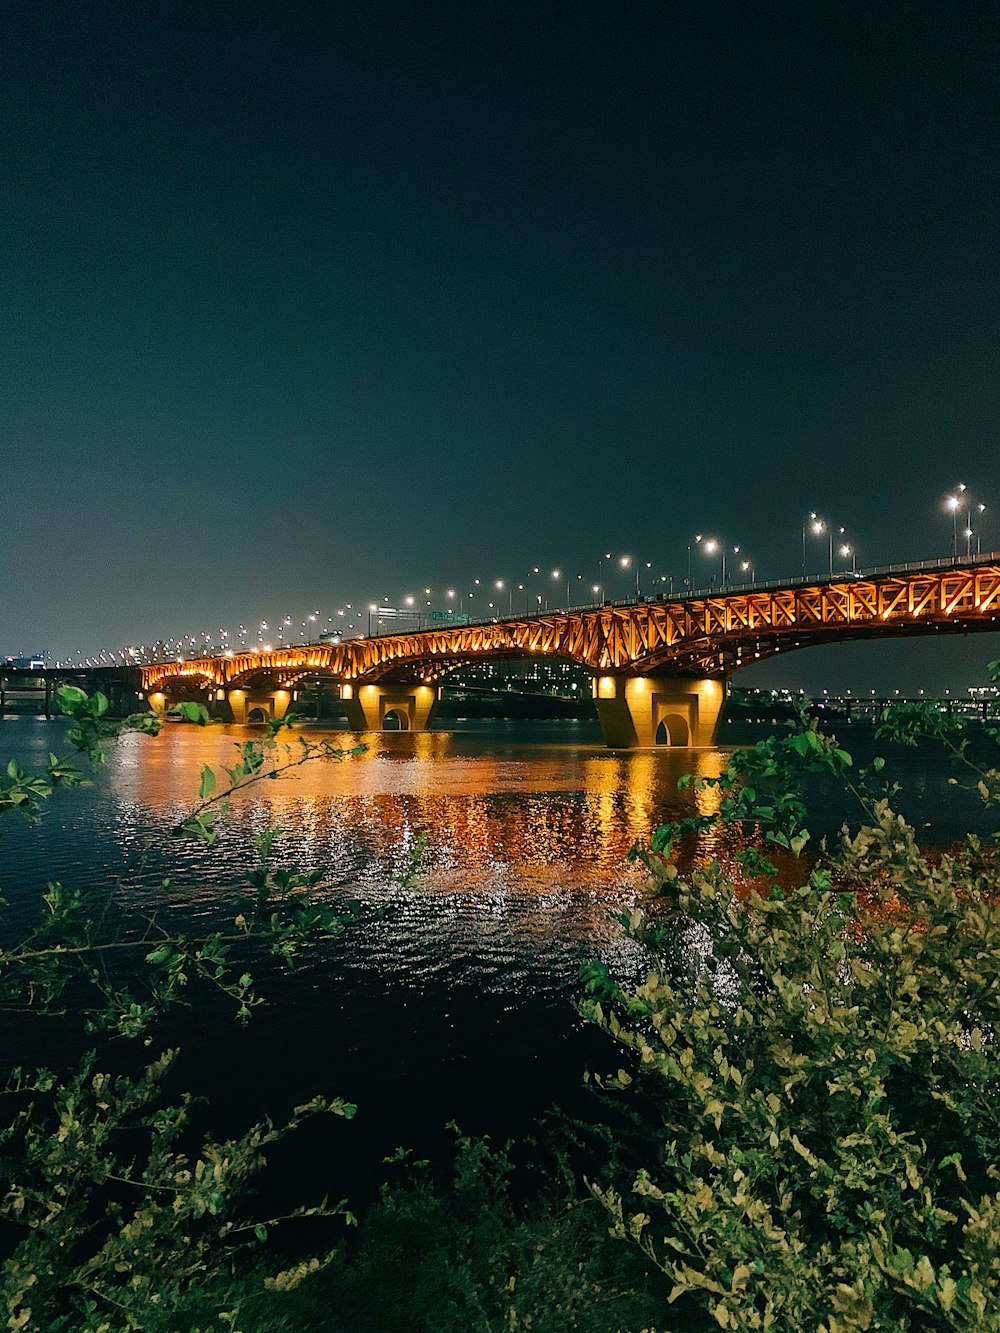 Puente de metal iluminado por la noche